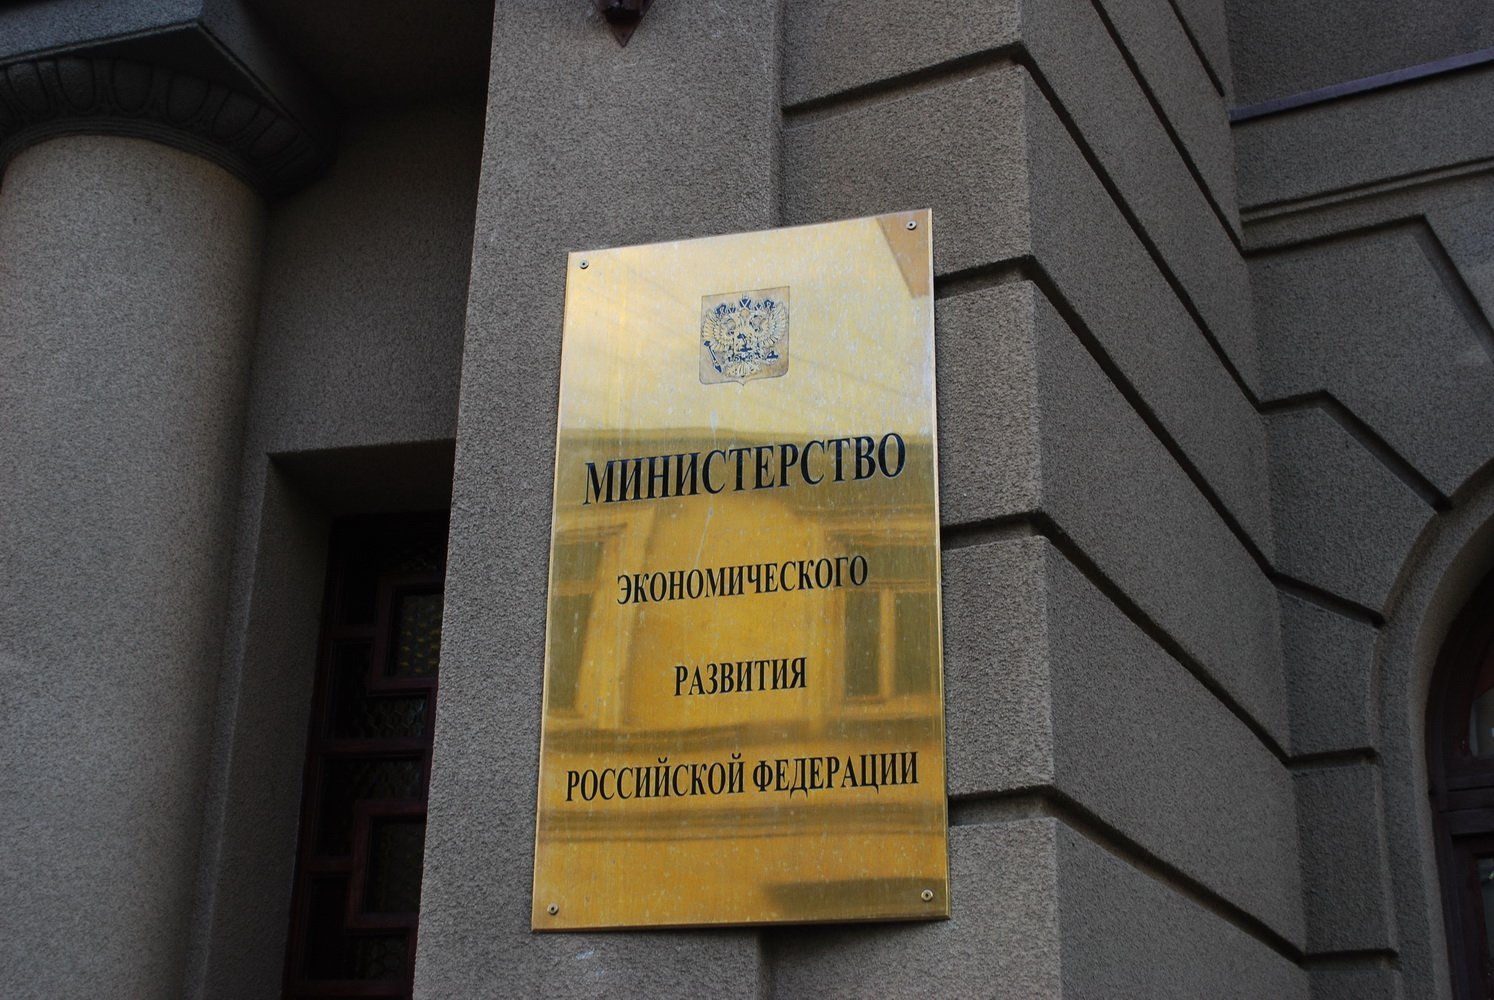 Пирс включен в рабочую группу Минэкономразвития по регулированию краудфандинговой деятельности в России